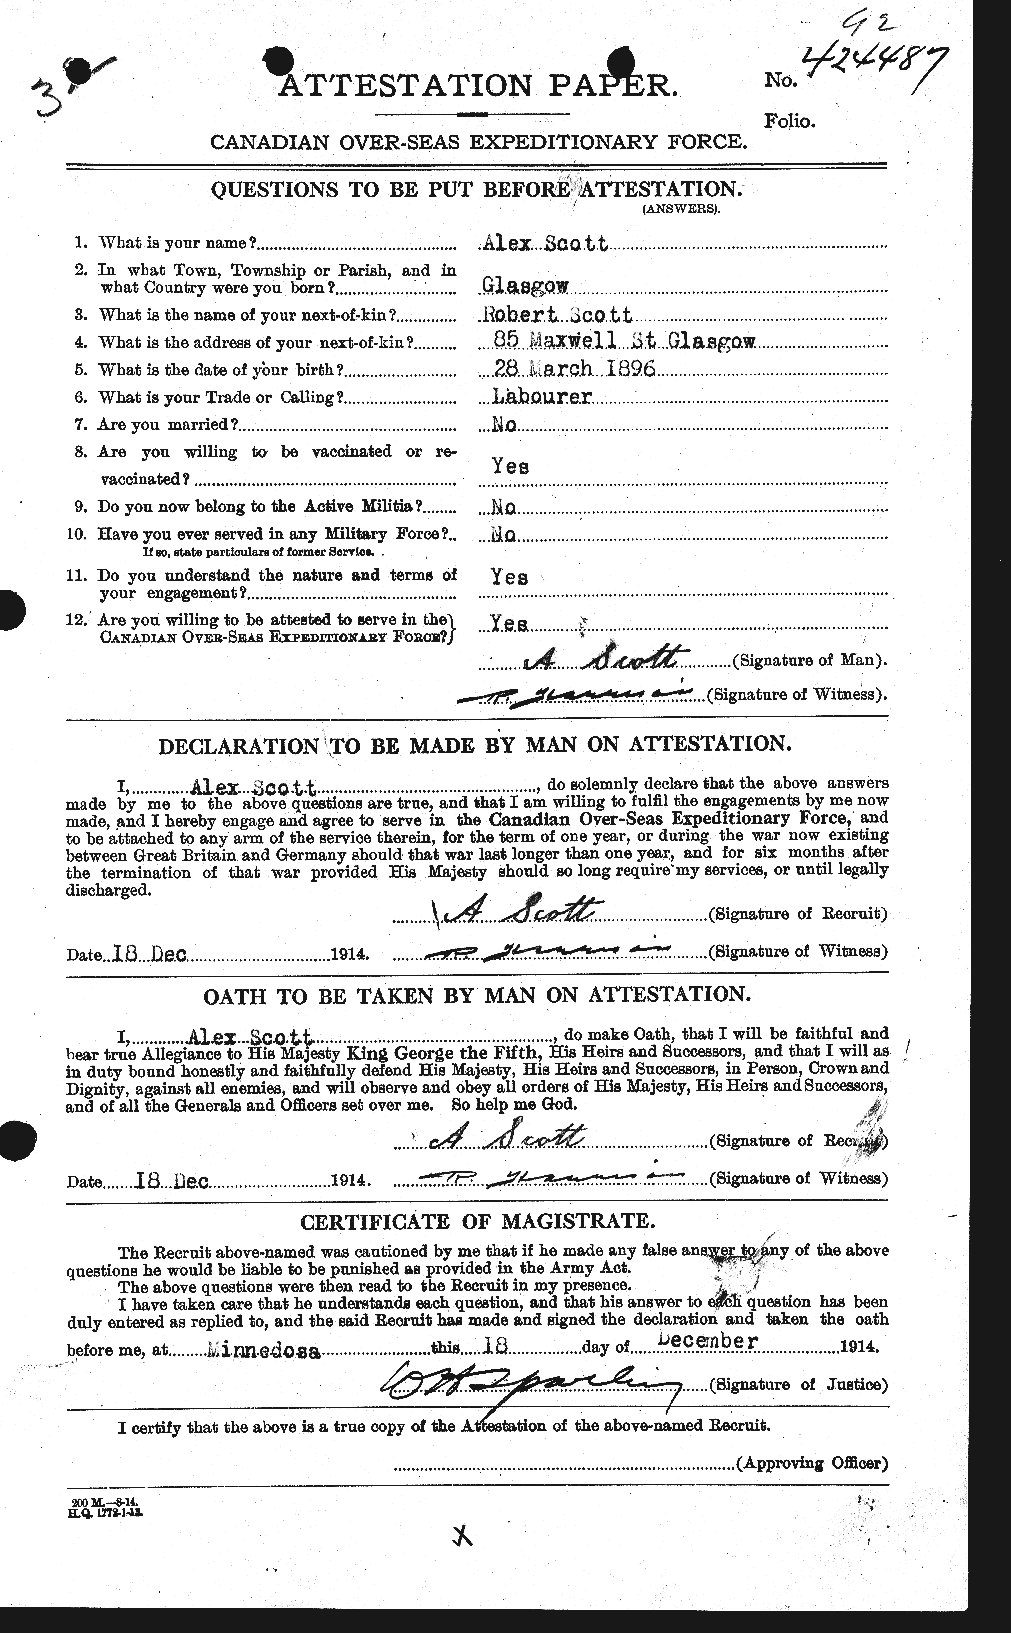 Dossiers du Personnel de la Première Guerre mondiale - CEC 086838a